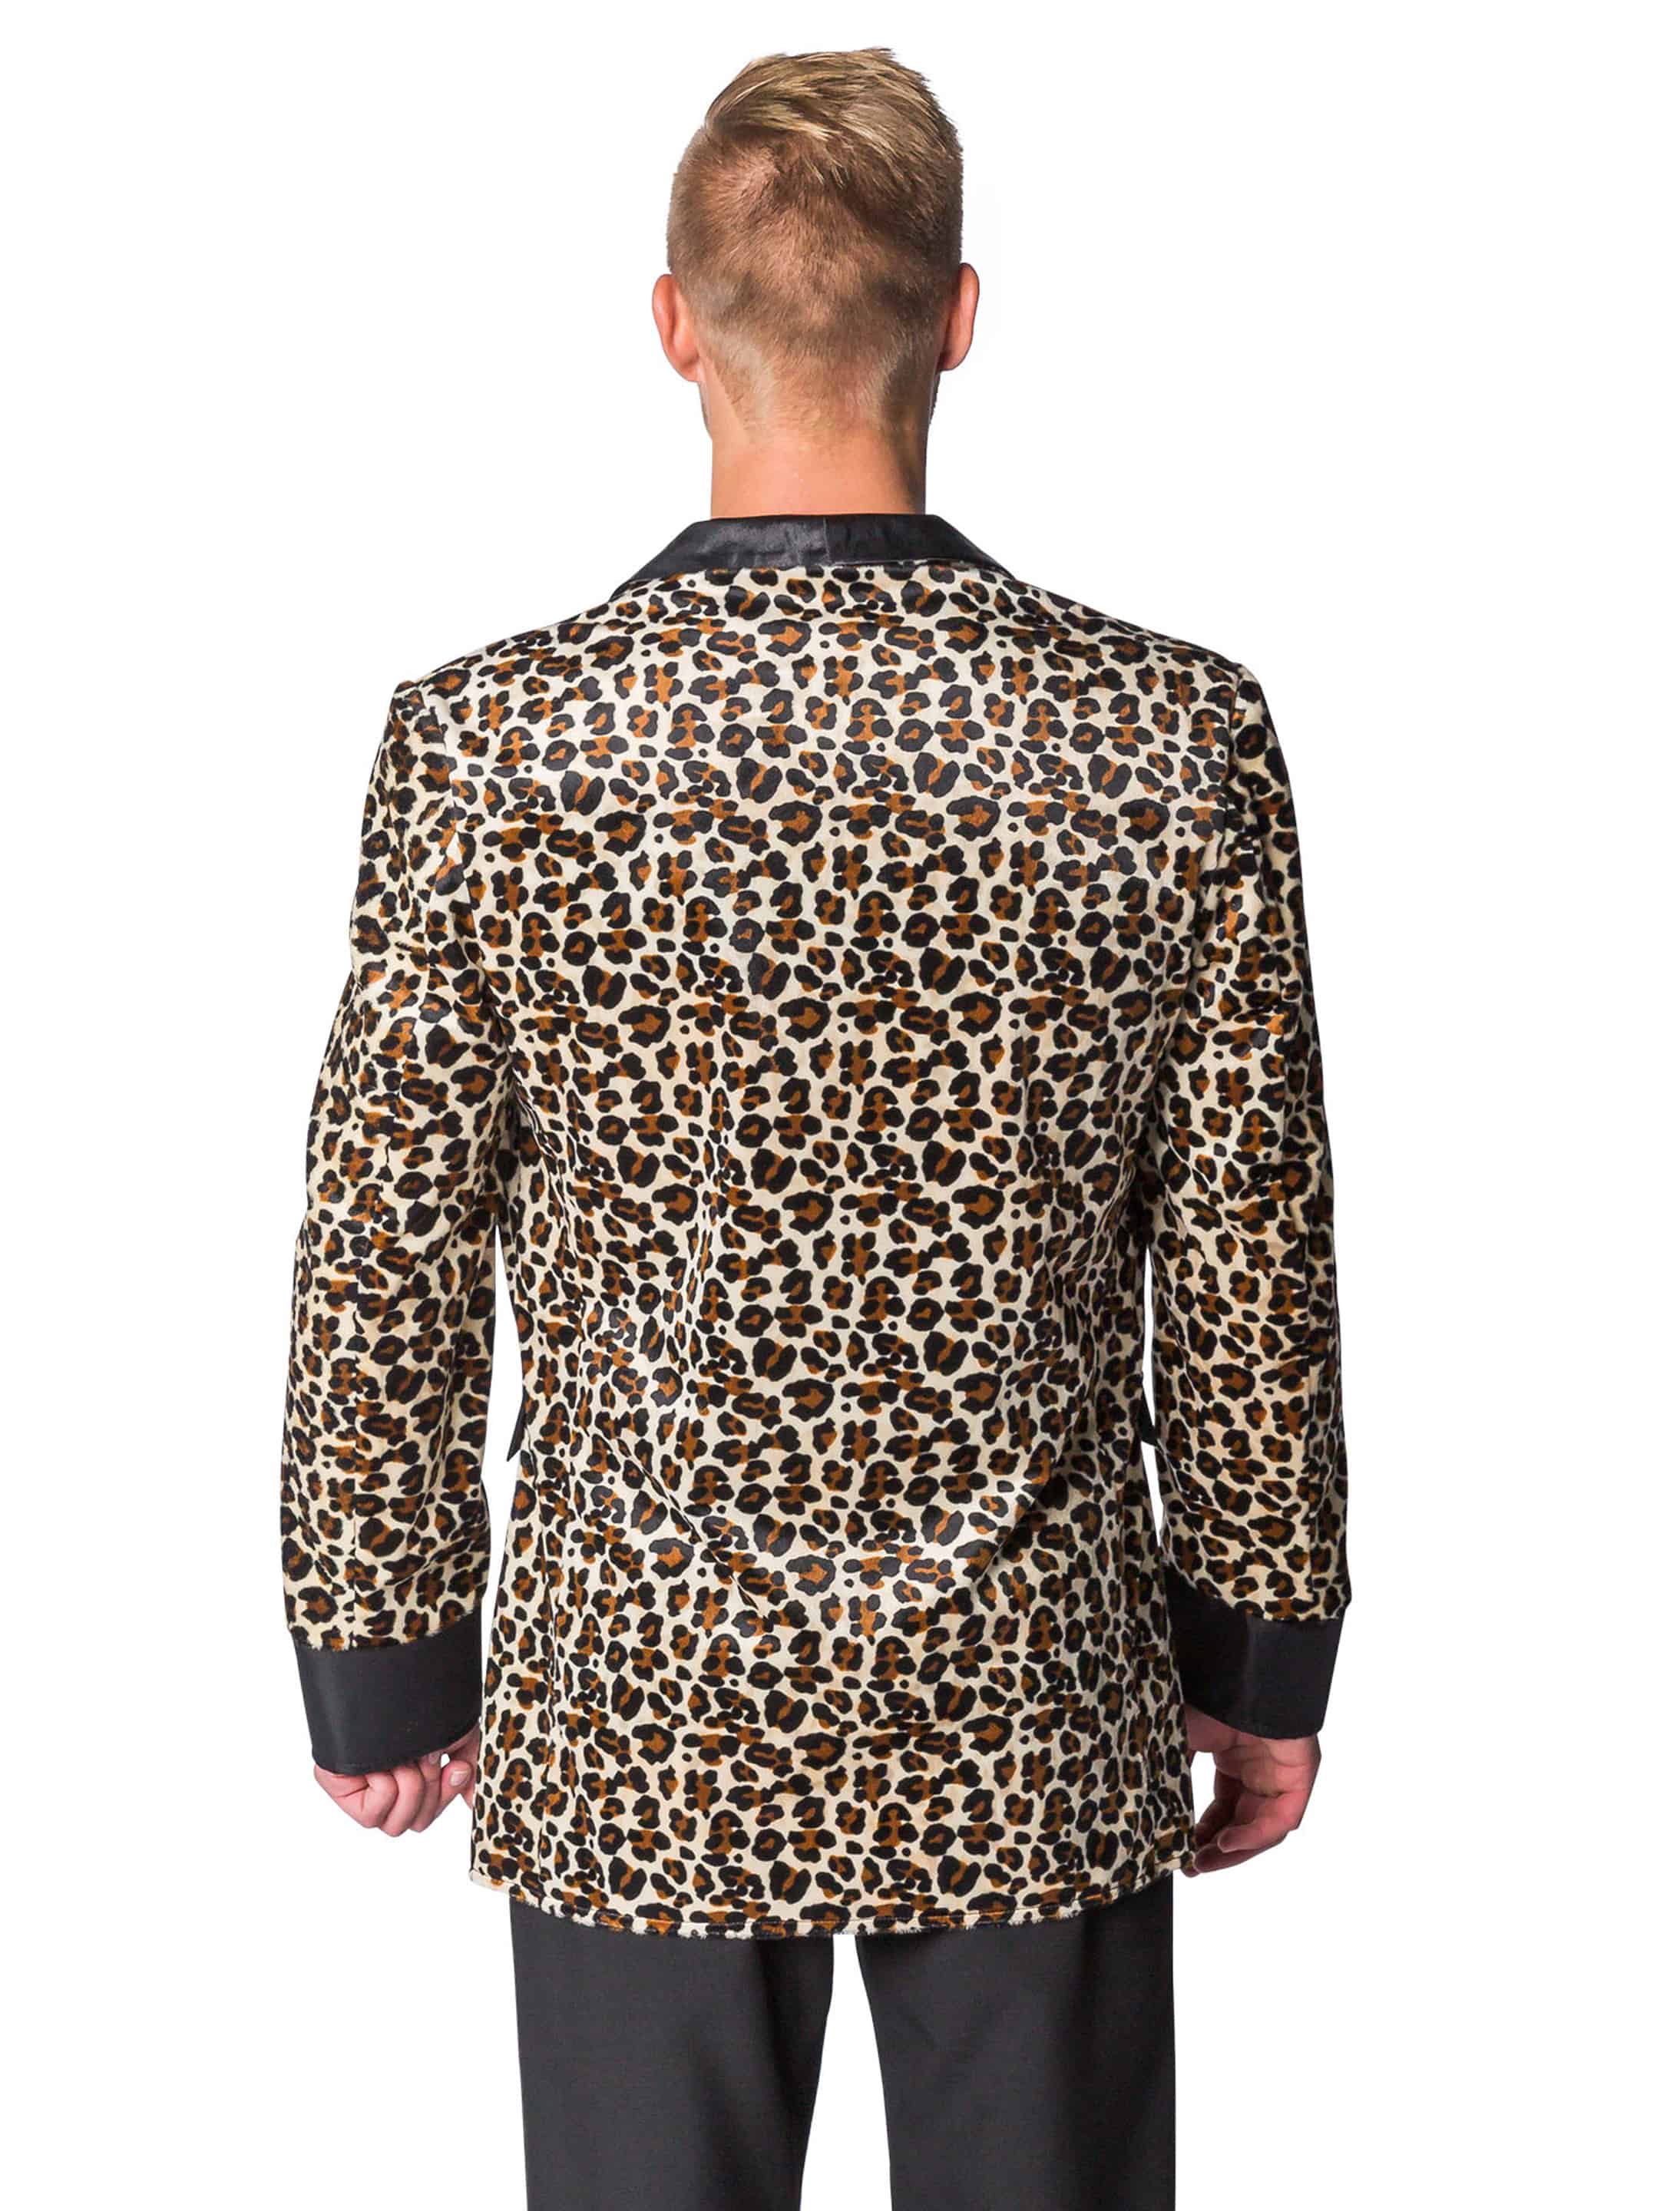 Jacke Leopardenmuster Herren braun XL